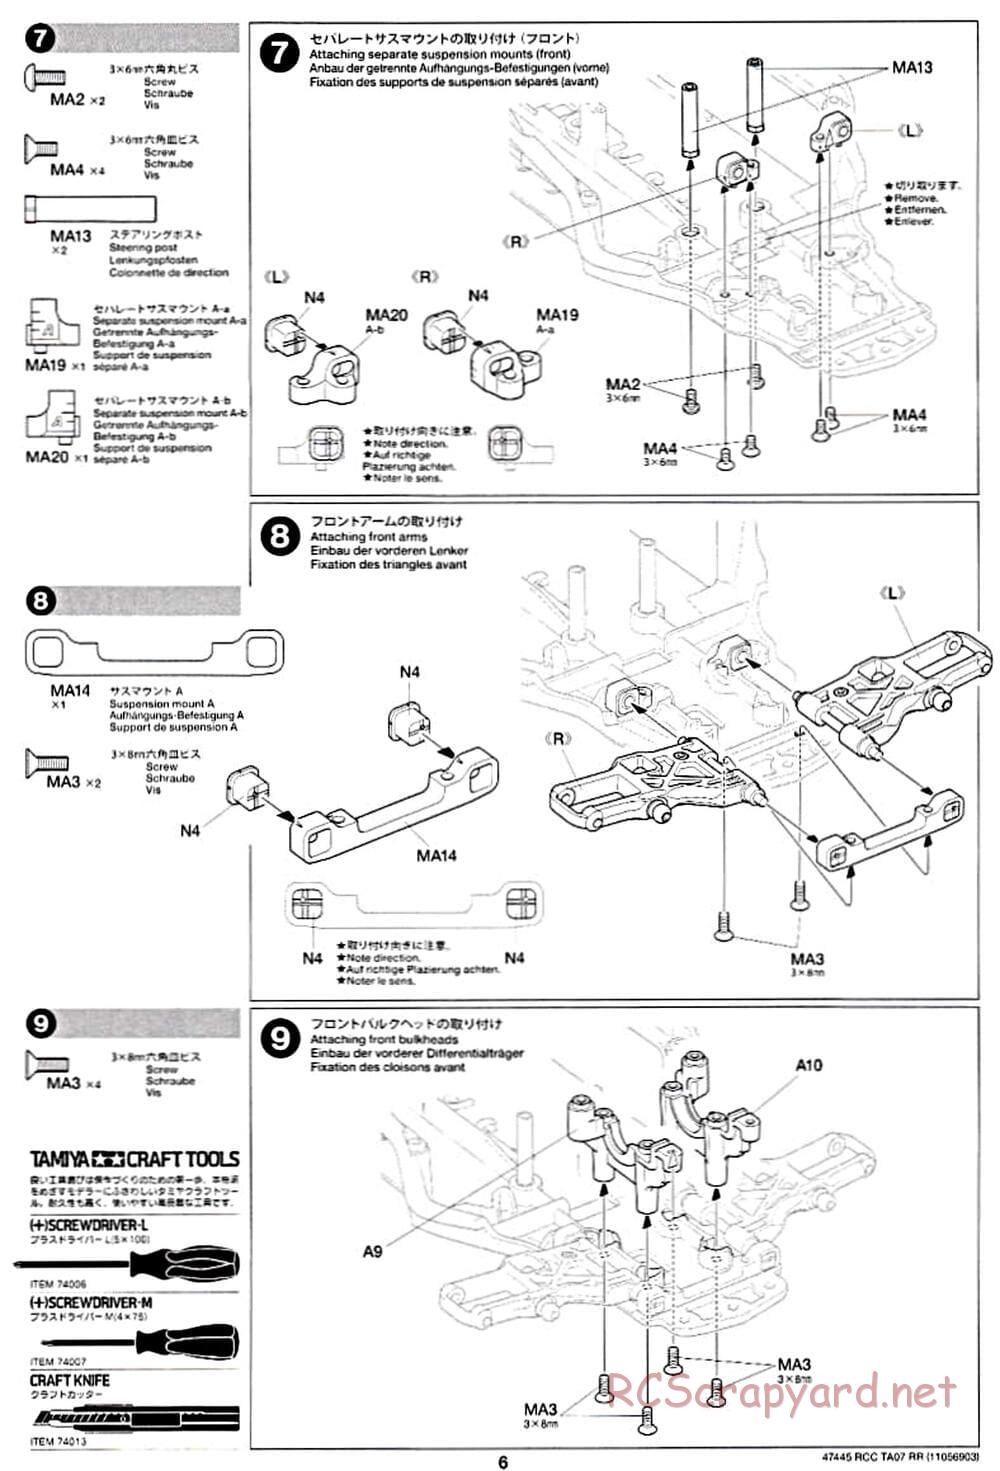 Tamiya - TA07 RR Chassis - Manual - Page 6